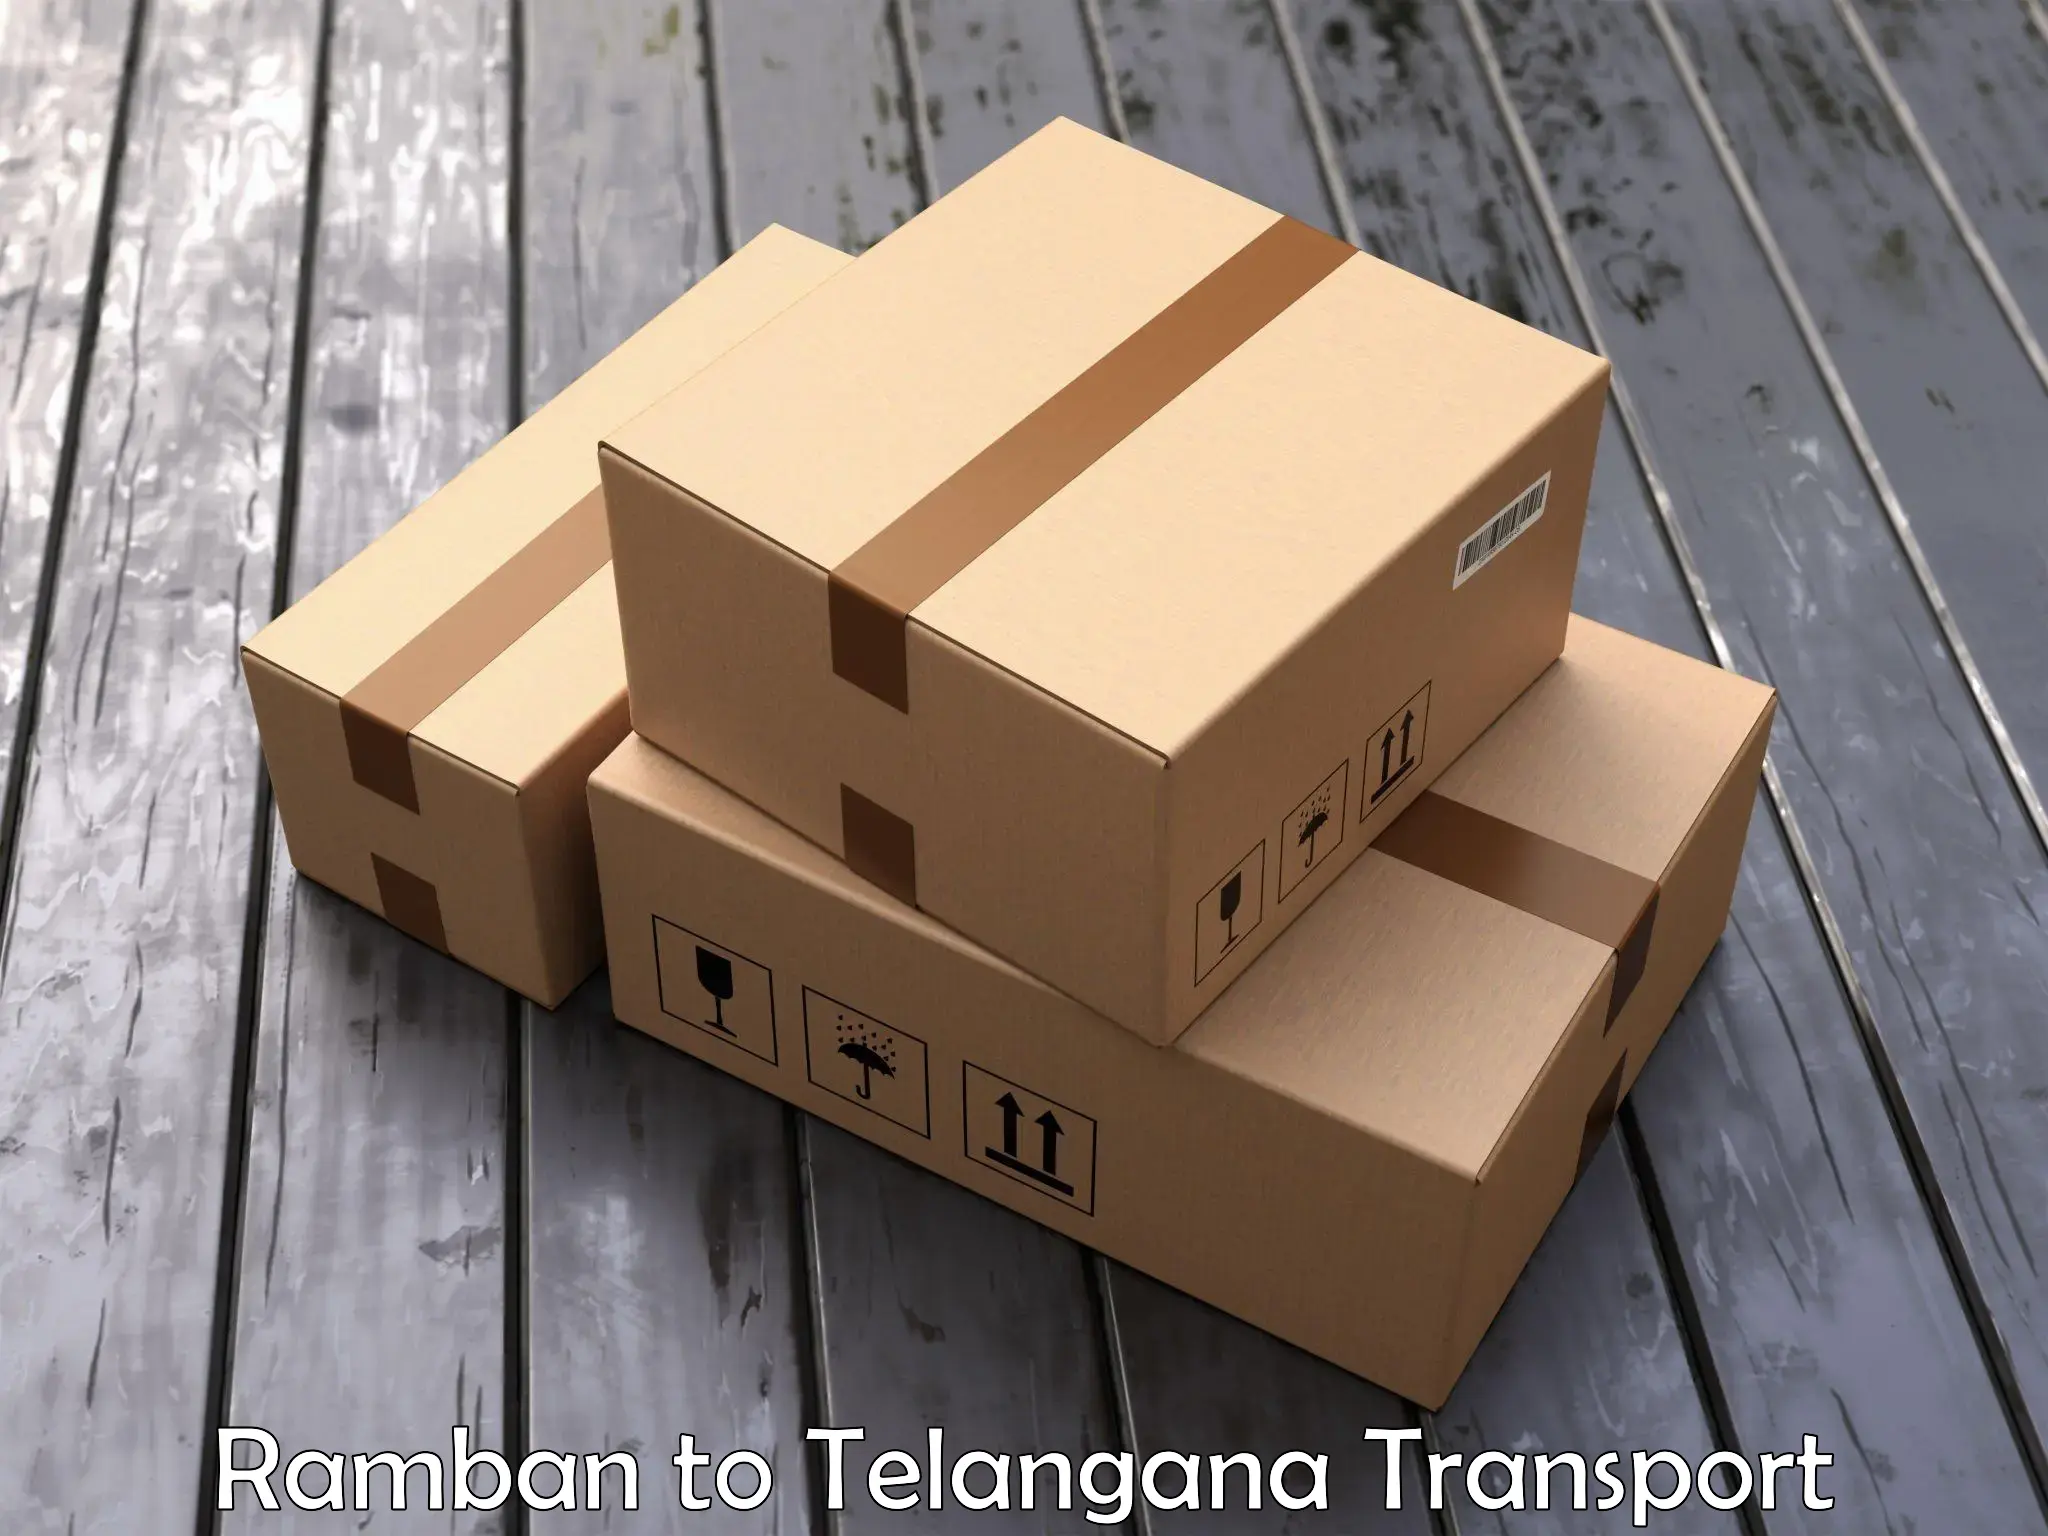 Two wheeler parcel service Ramban to Warangal